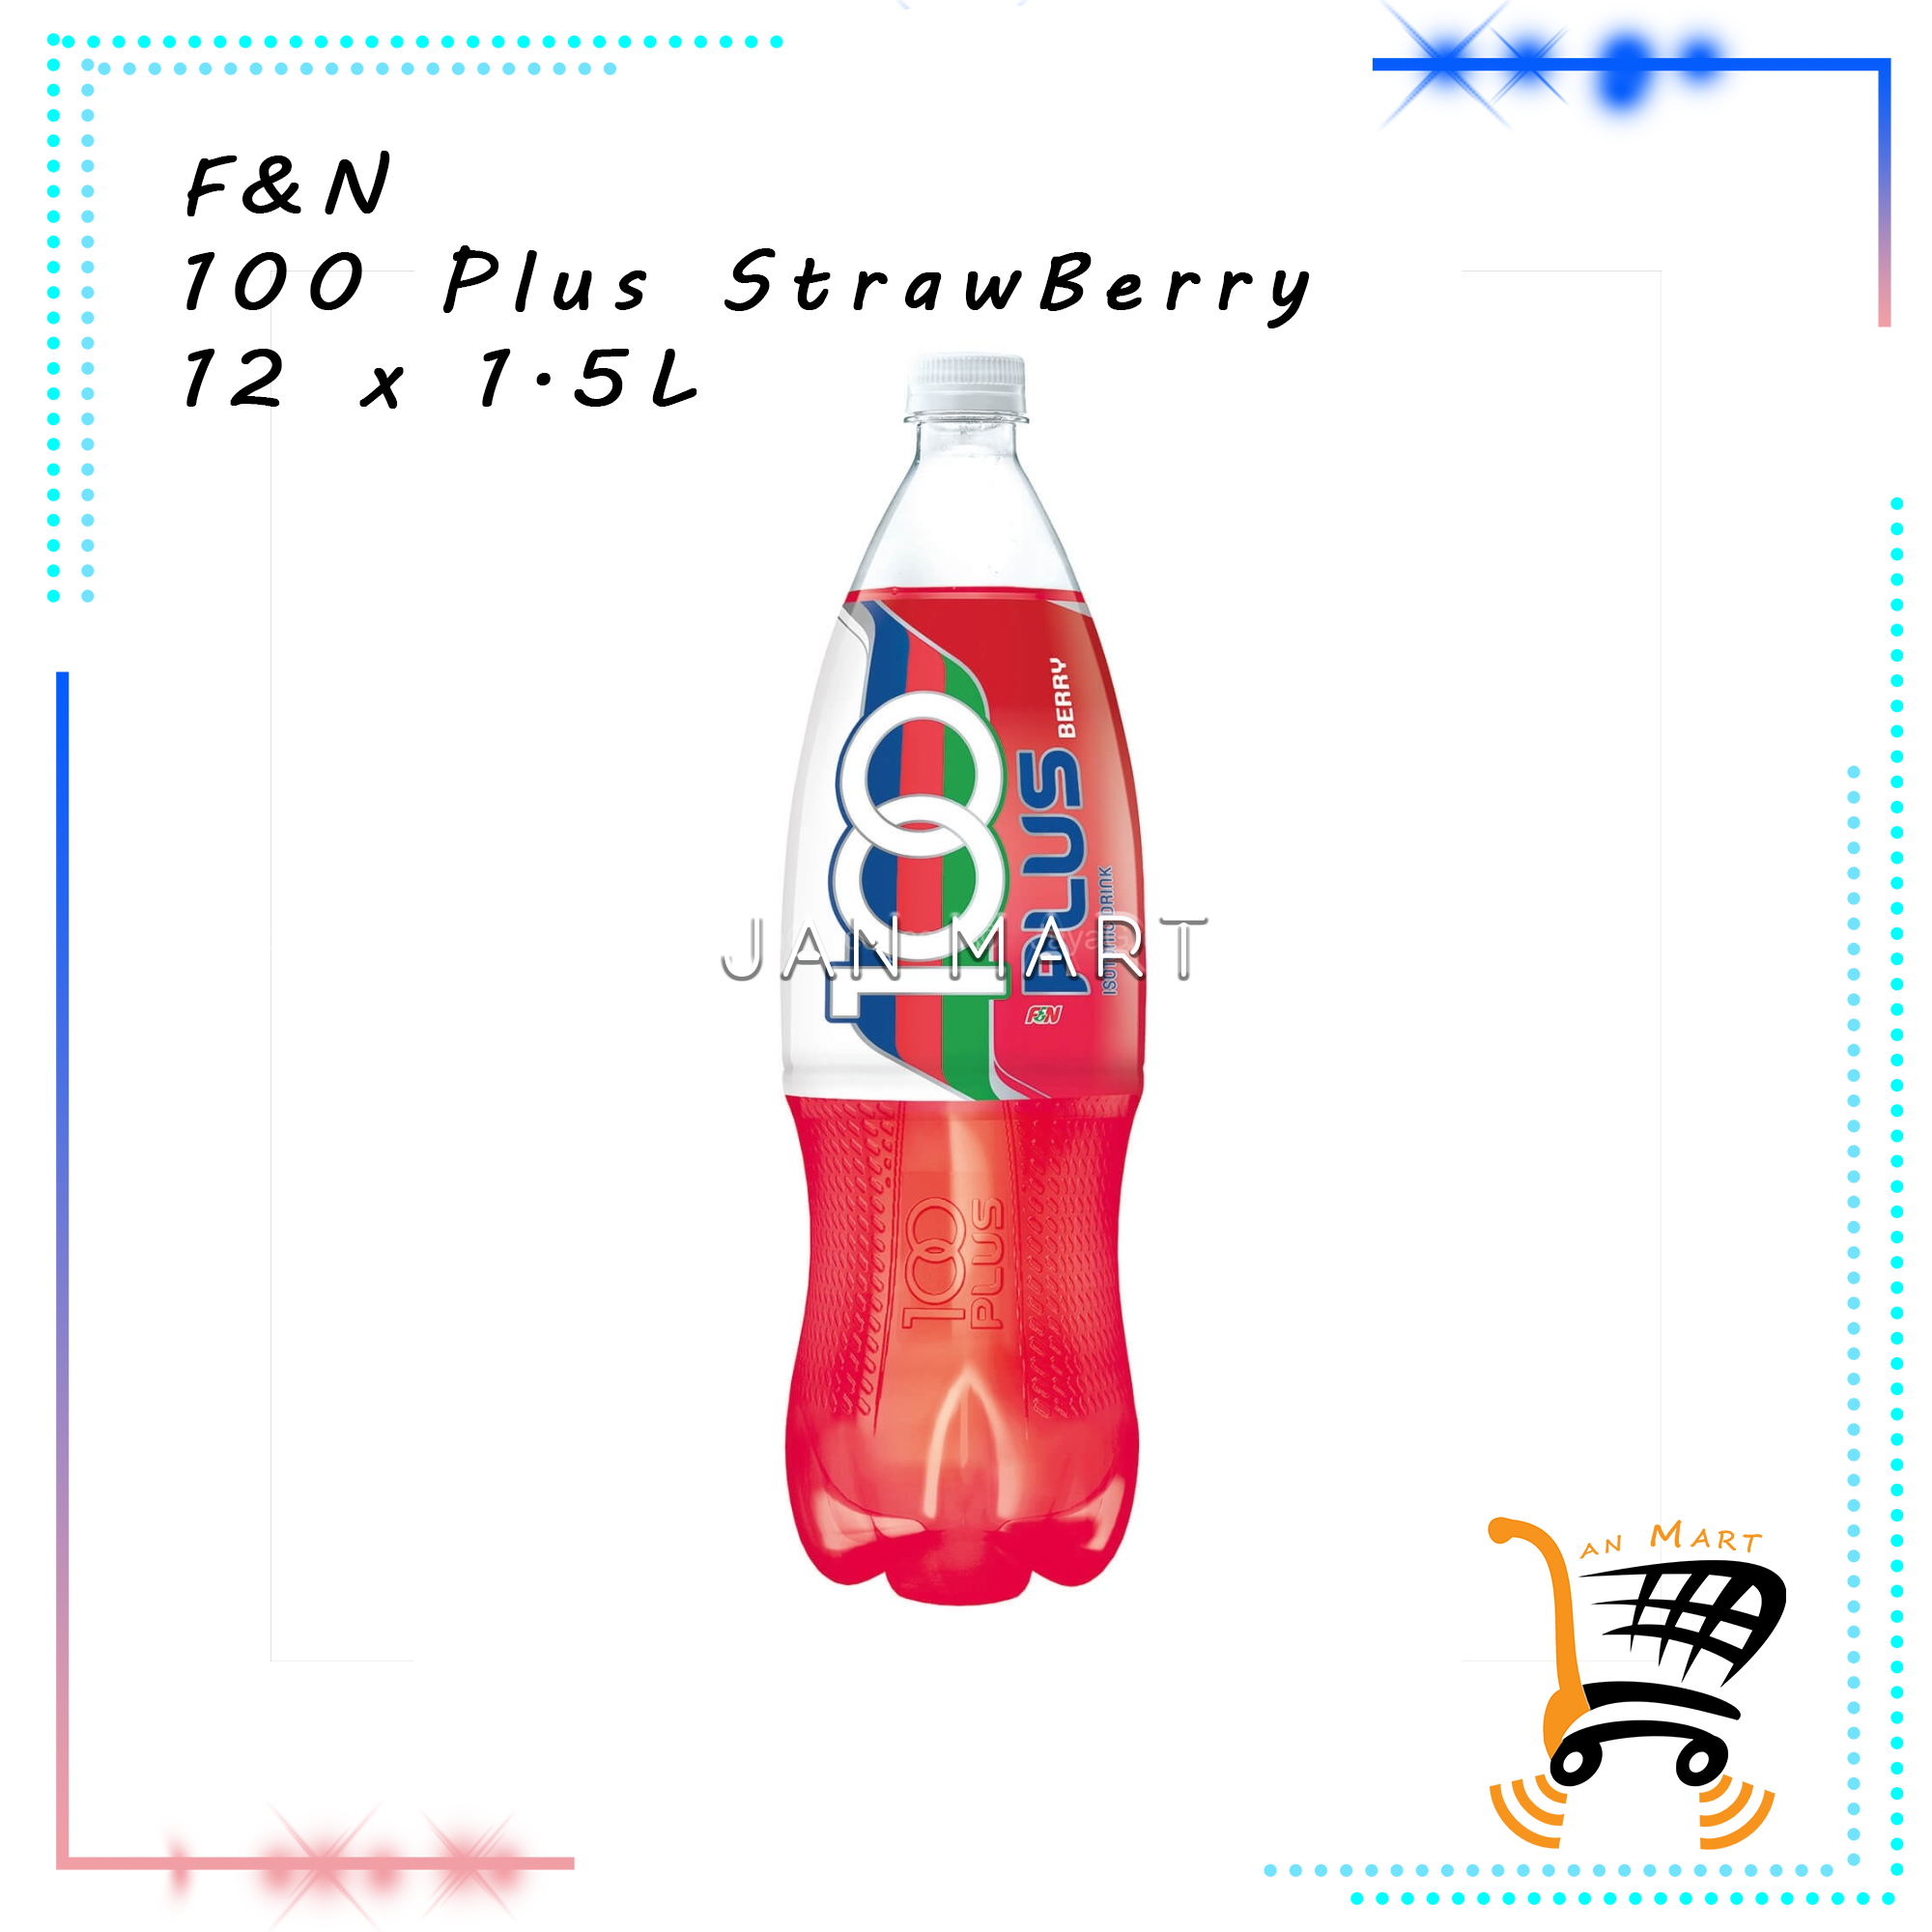 F&N 100 Plus StrawBerry 12 x 1.5L